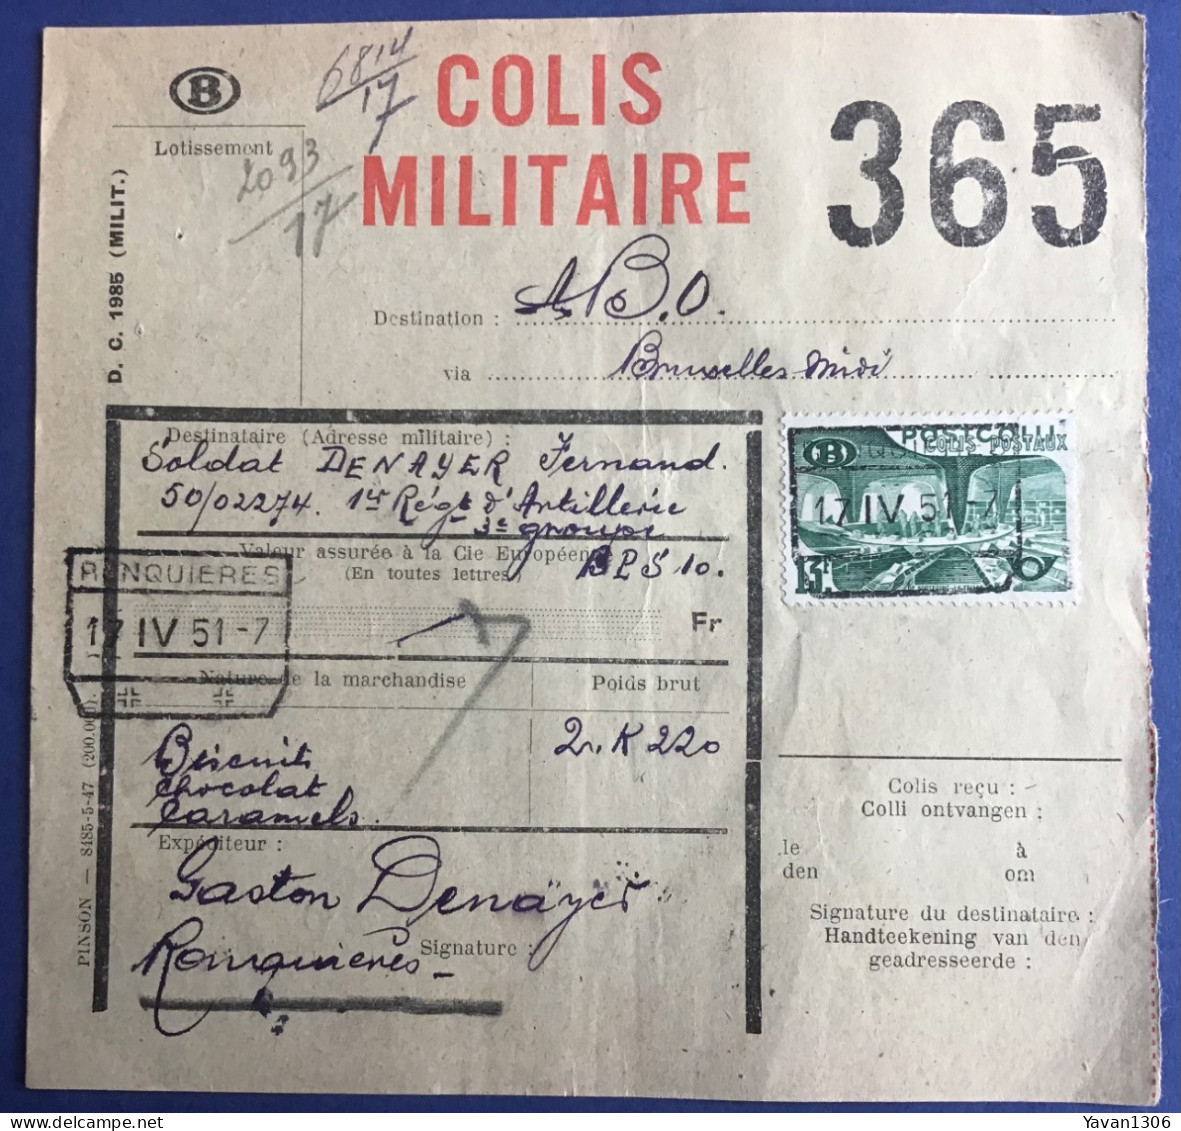 Ronquieres  Expédition  D’un Colis Militaire Vers Le Soldat Denayer Fernand  17 Avril 1951 - Documents & Fragments